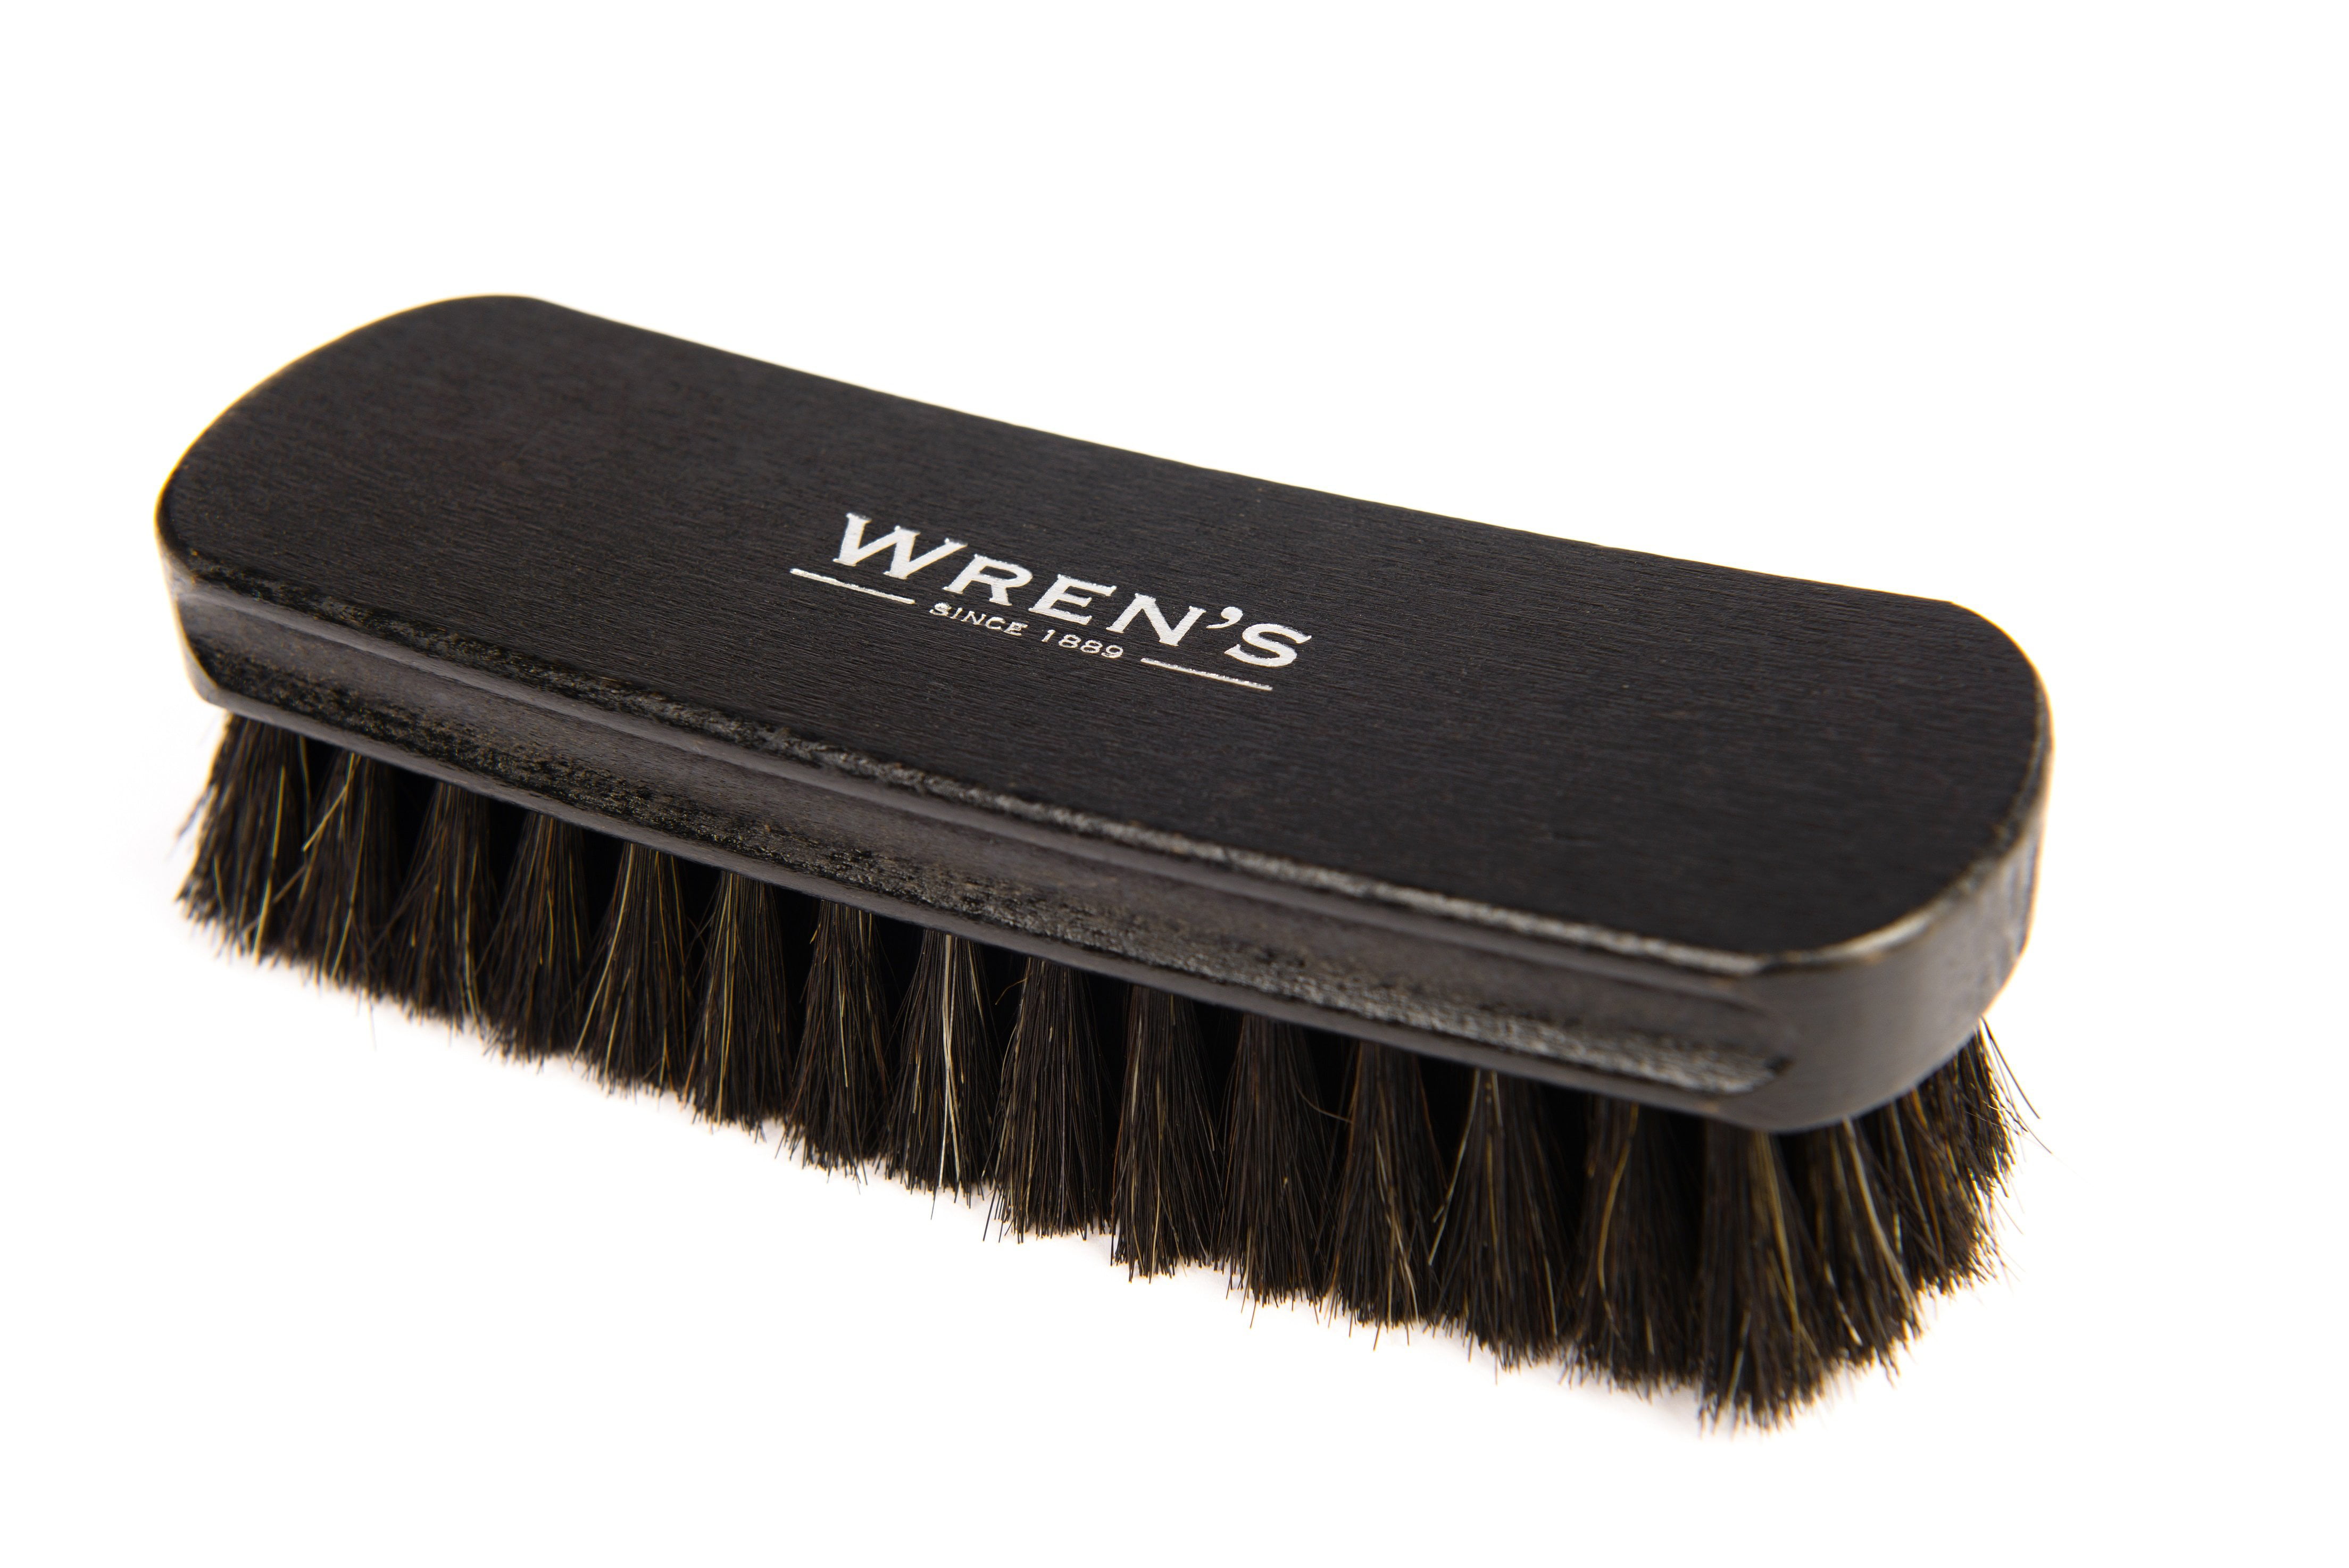 High-Polish Shoe Luxury Horse Hair Brushes Polishing Kit